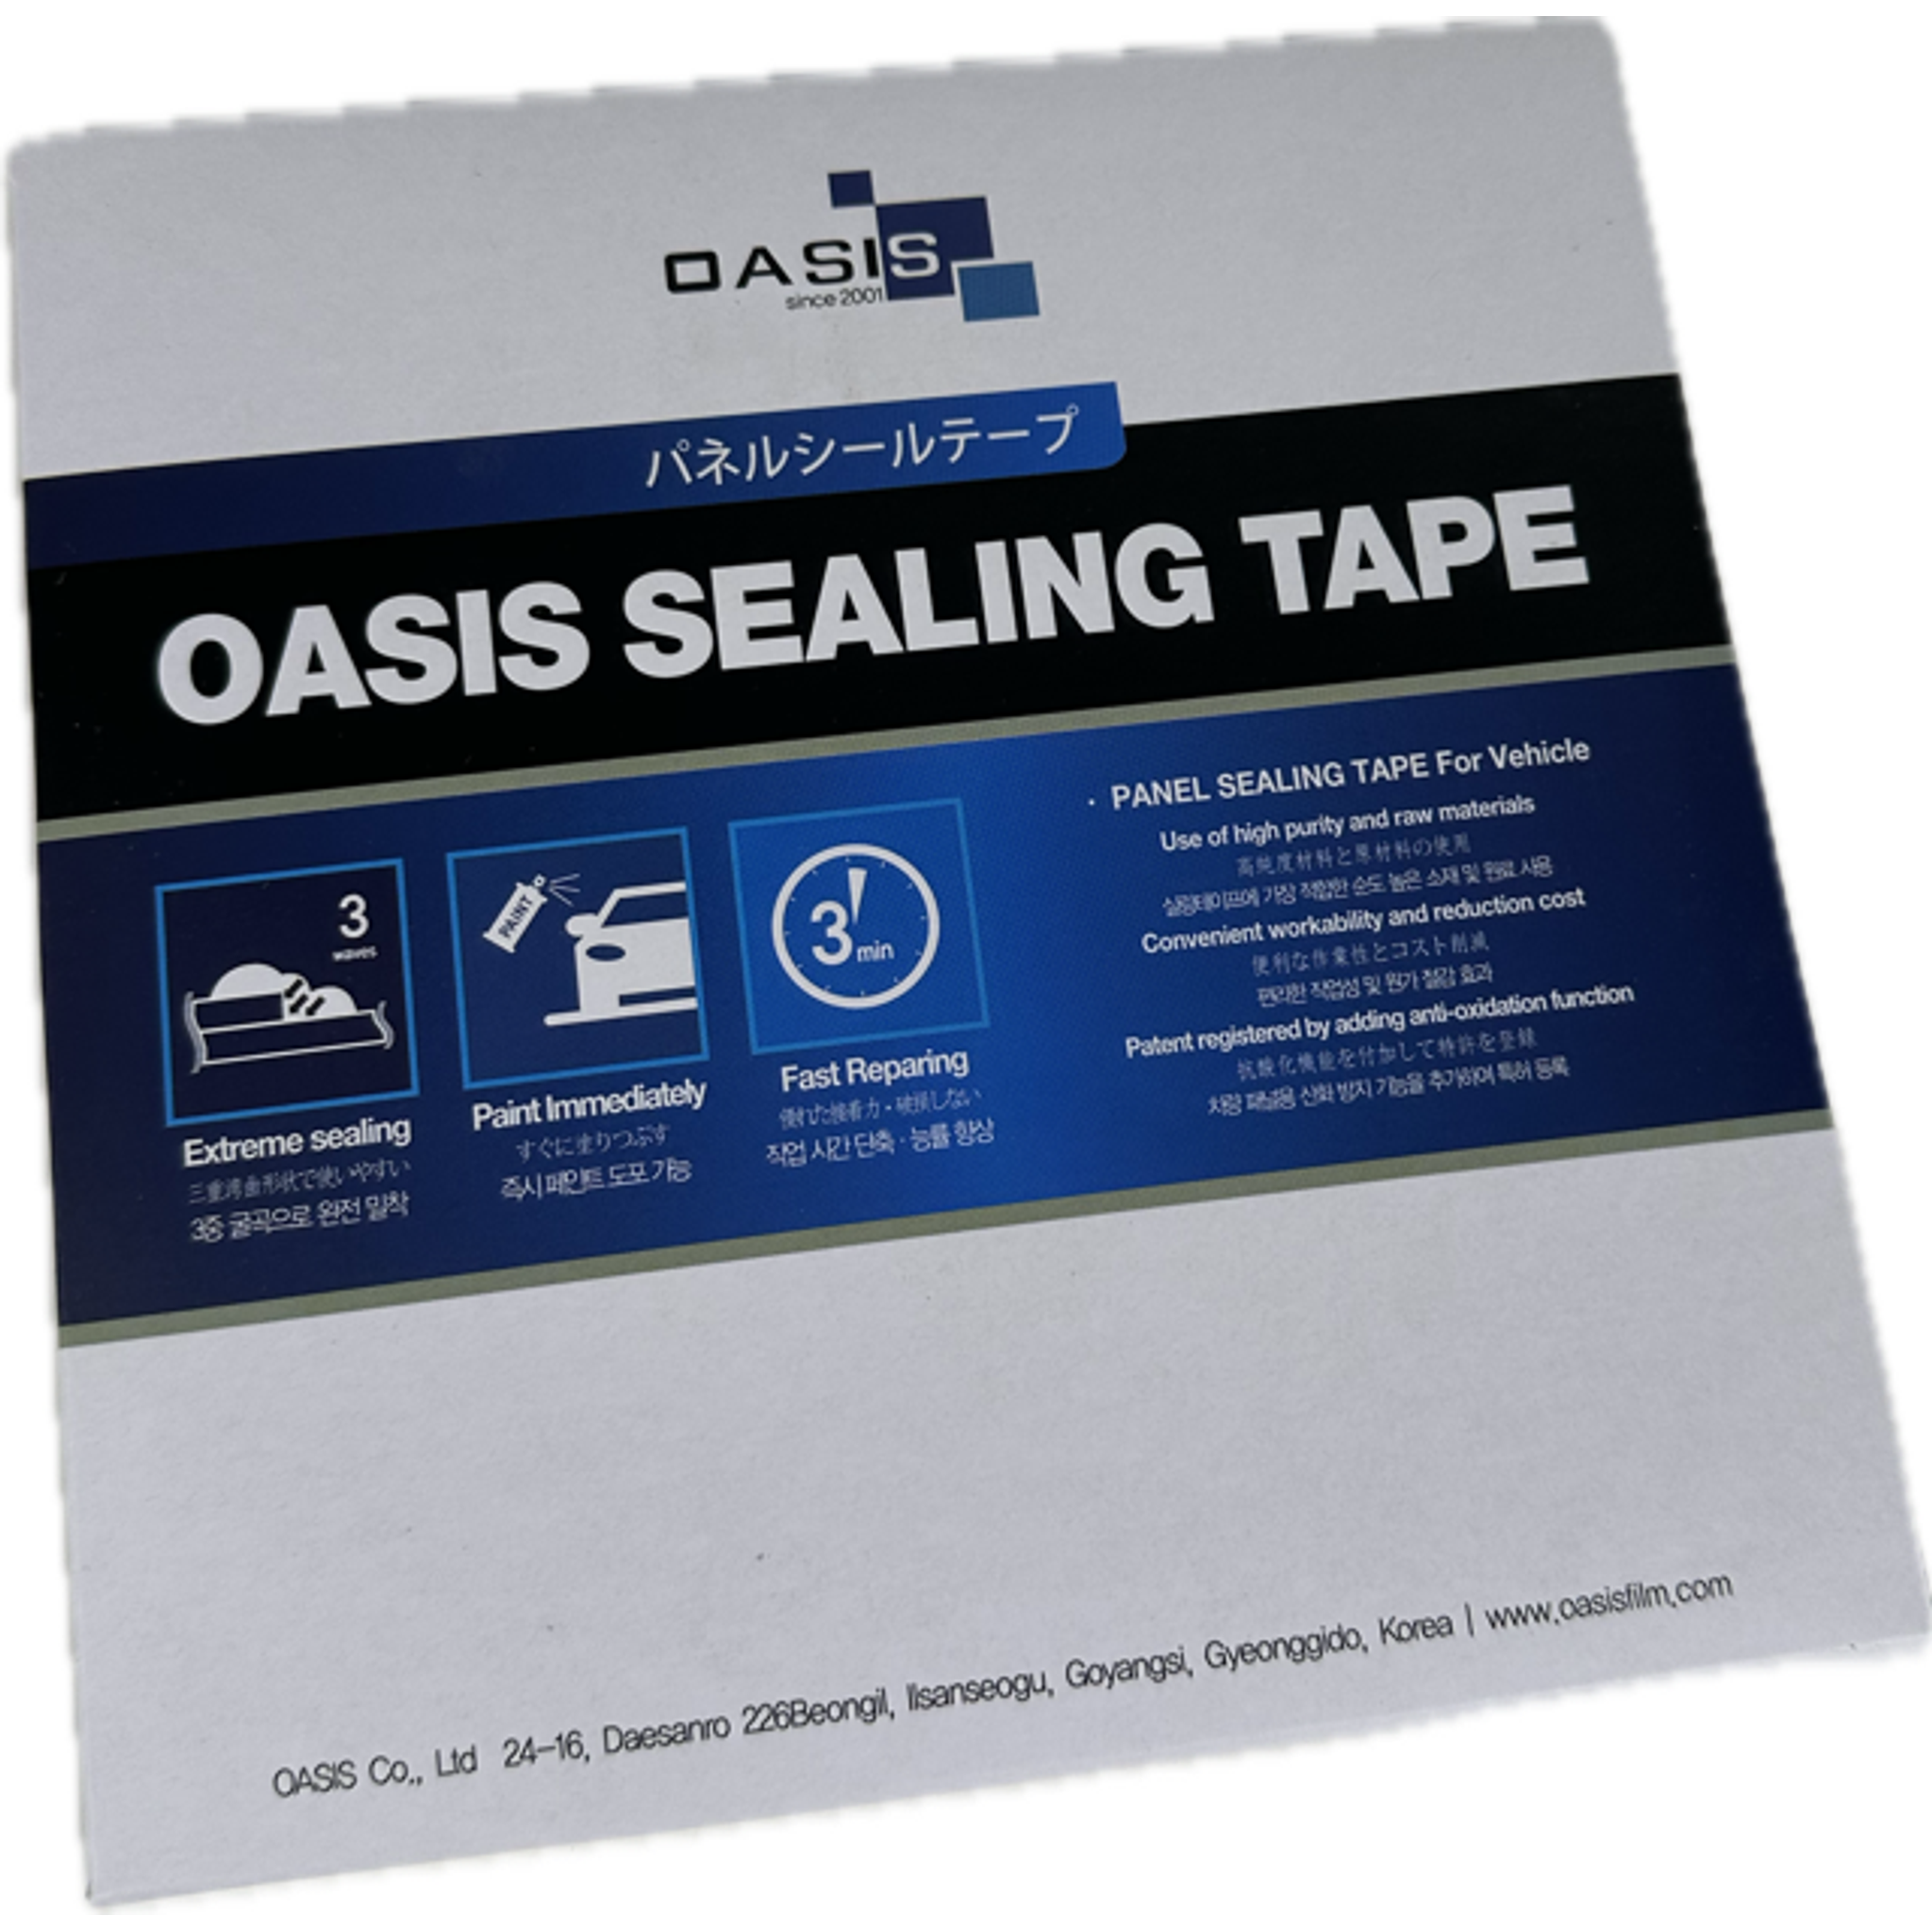 OASIS SEAM SEALING TAPE 8mm x 12m